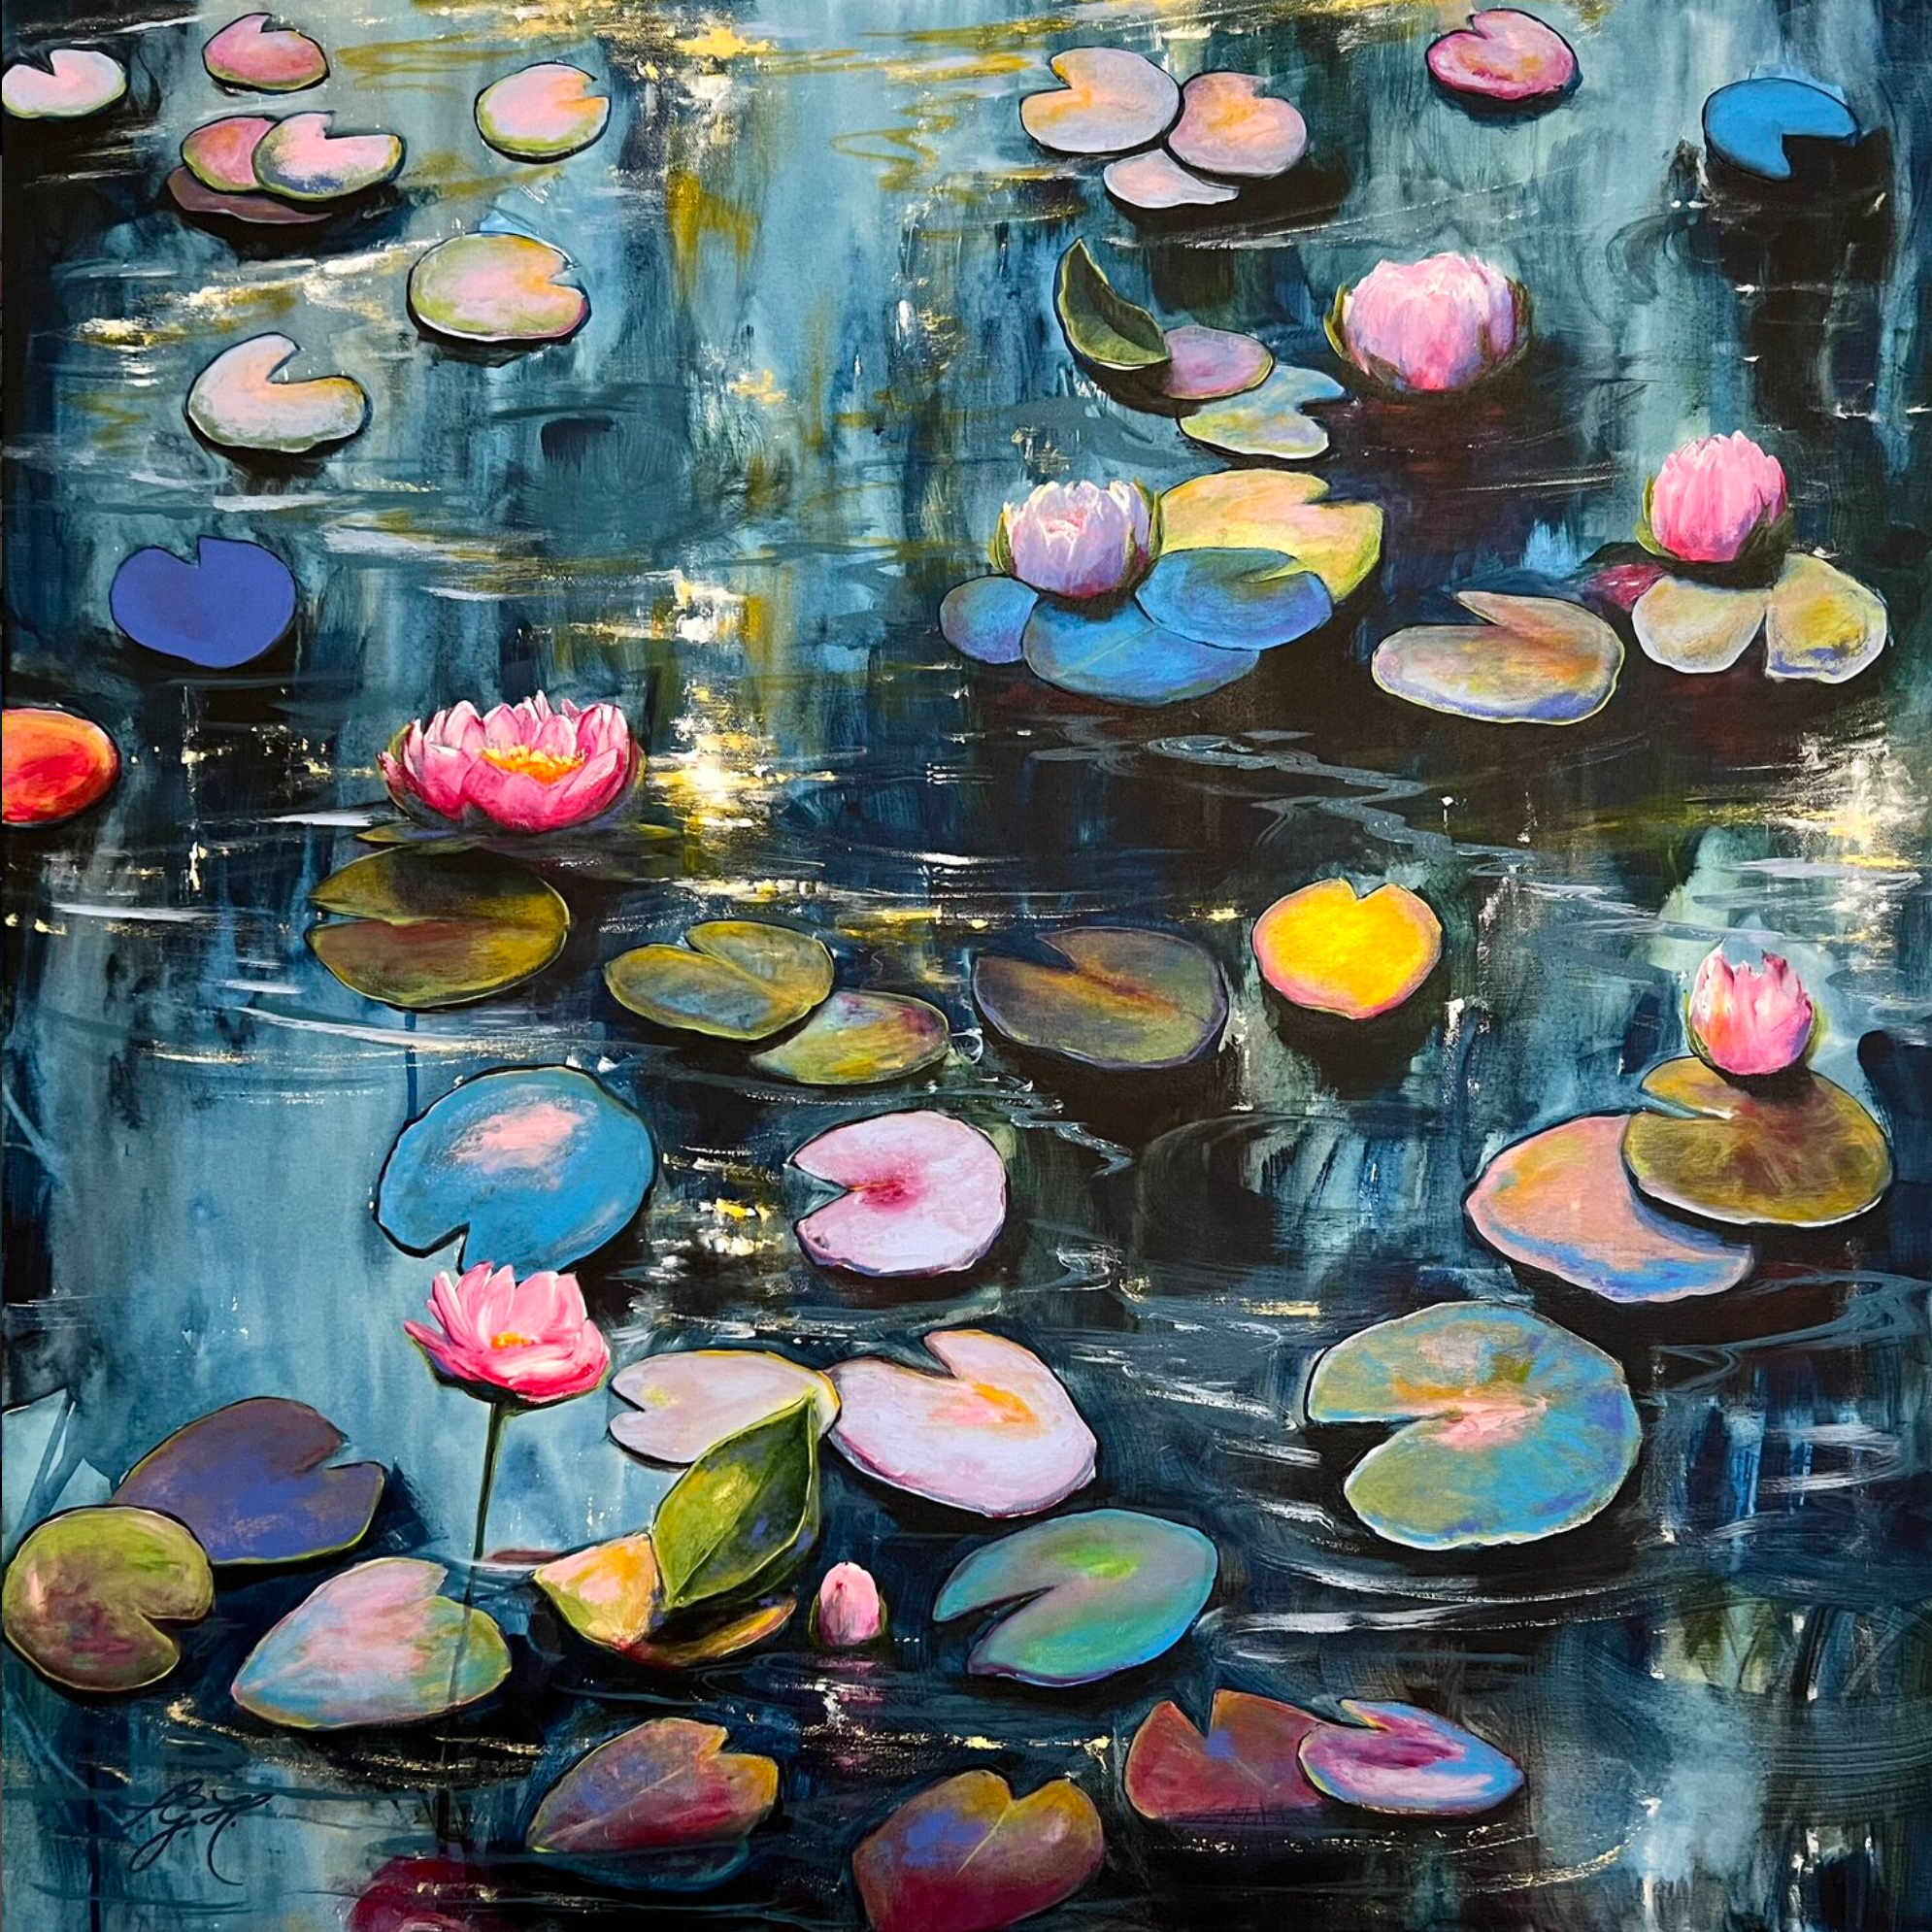 Sandra Gebhardt-Hoepfners  "Happy At The Pond 4" farbenfrohes Gemälde zeigt eine langsam untergehende Sonne, reflektiert pink und warm orange im Wasser. Die weißen und rosa Blüten liegen entspannt an den schläfrigen, bunten und grünen Blättern. Es ist so beruhigend, sie anzuschauen und dem sich leicht bewegenden Wasser zuzusehen. 